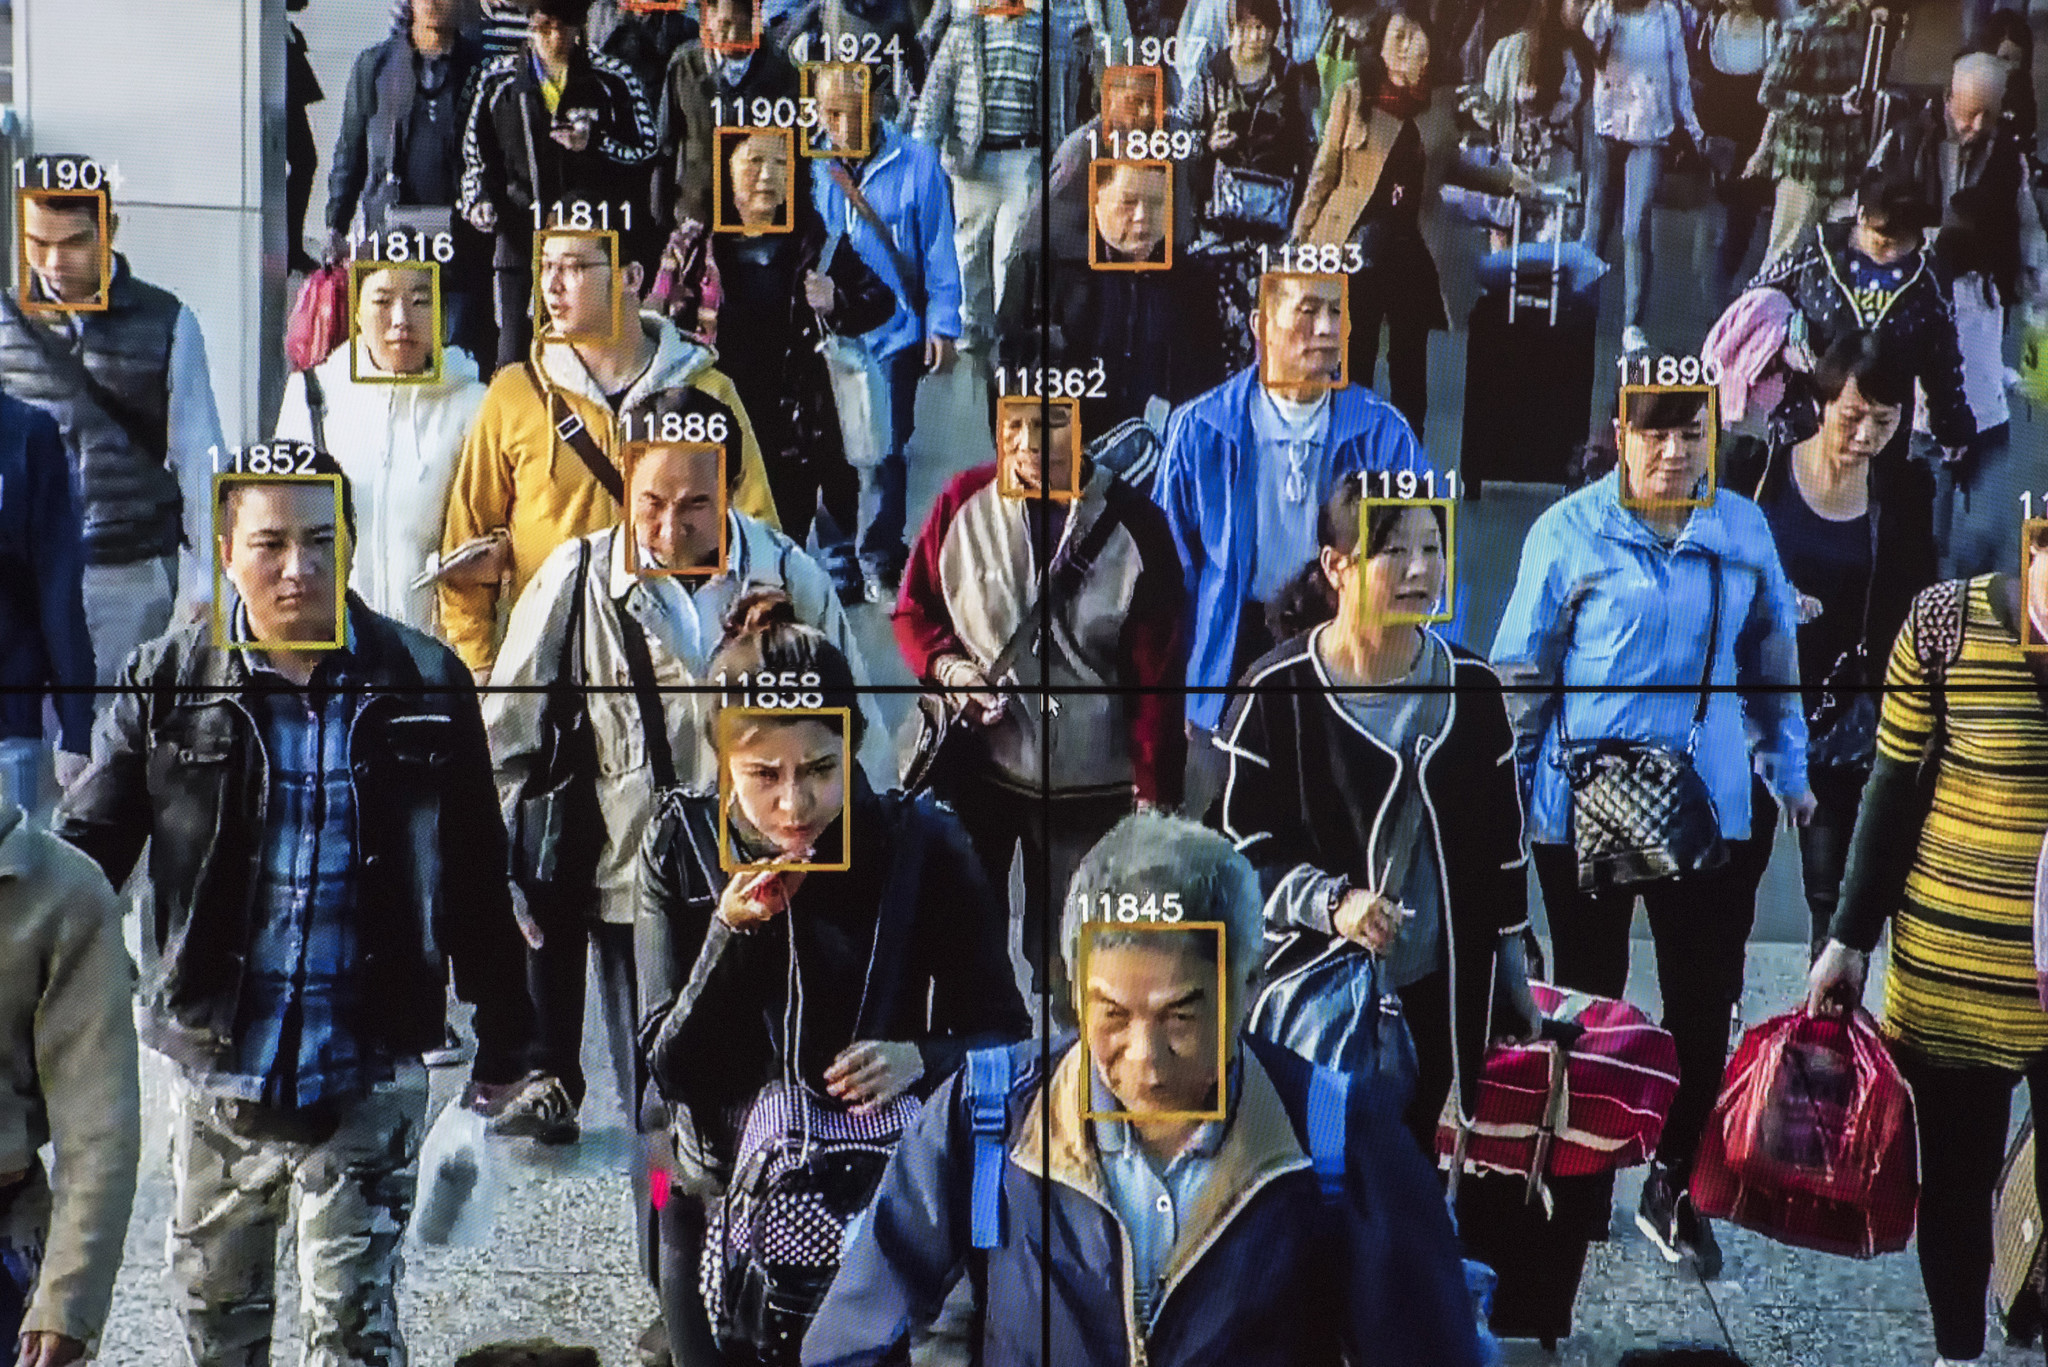 Cách dùng công nghệ nhận dạng khuôn mặt của Trung Quốc ảm ảnh người Mỹ